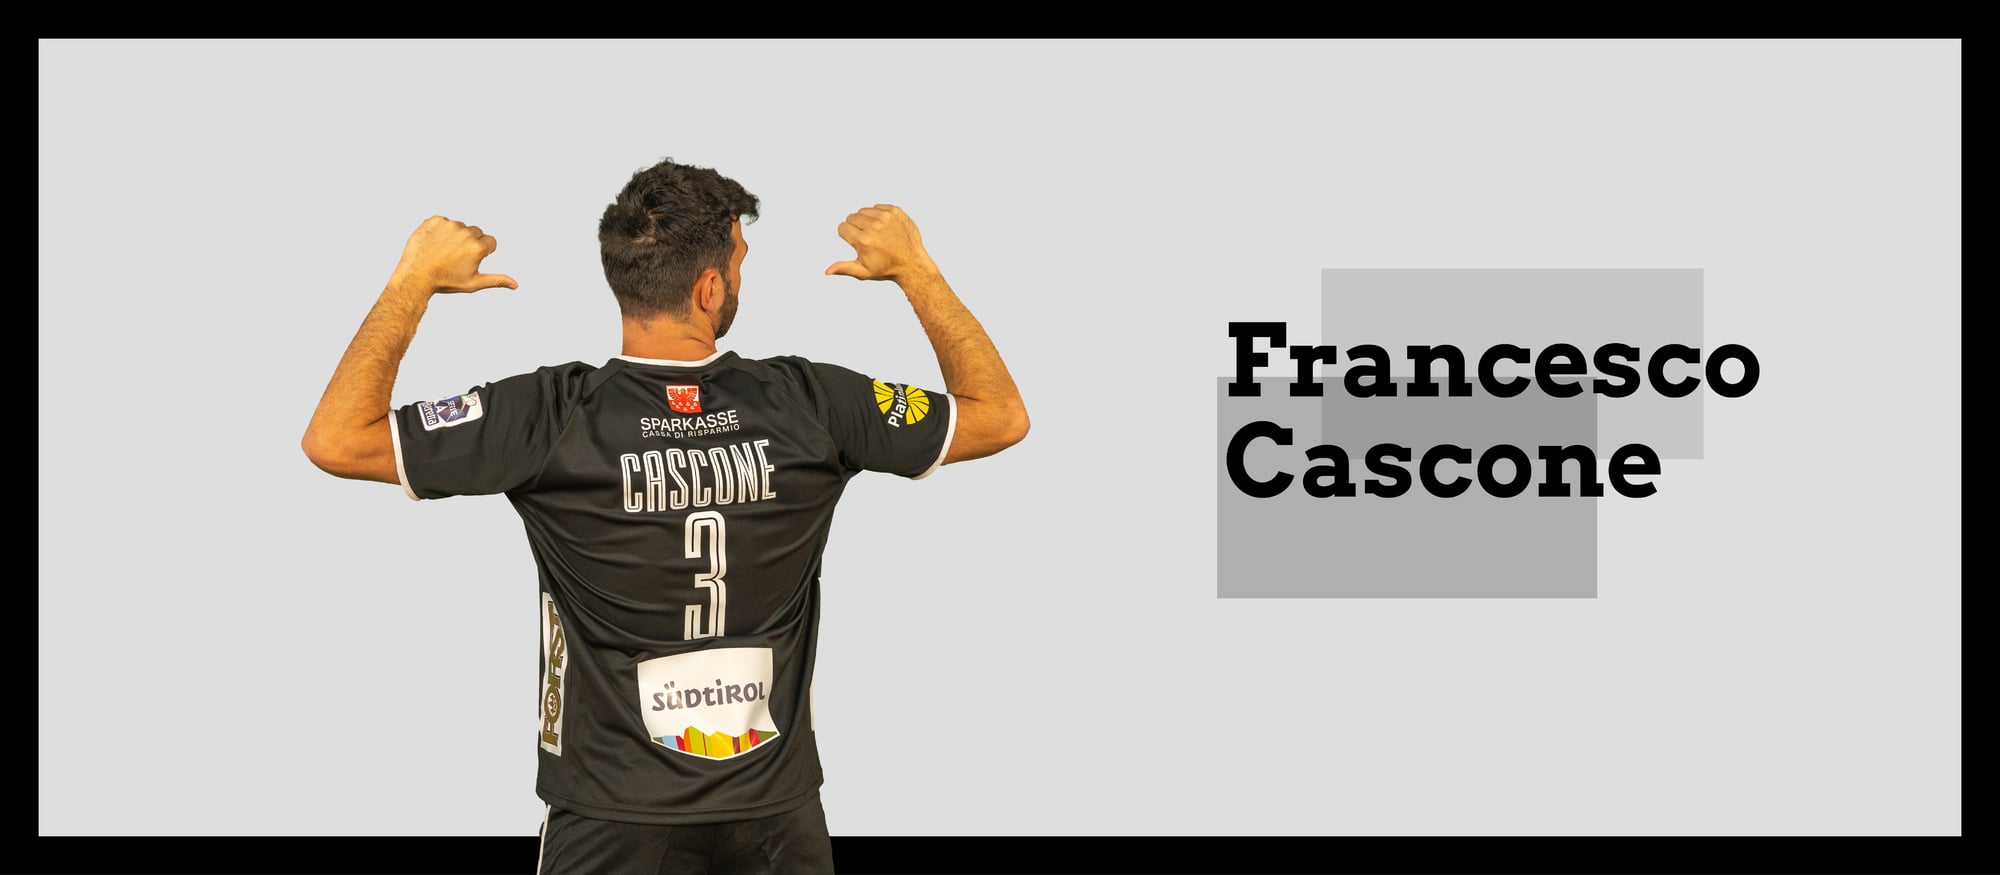 Cascone Francesco